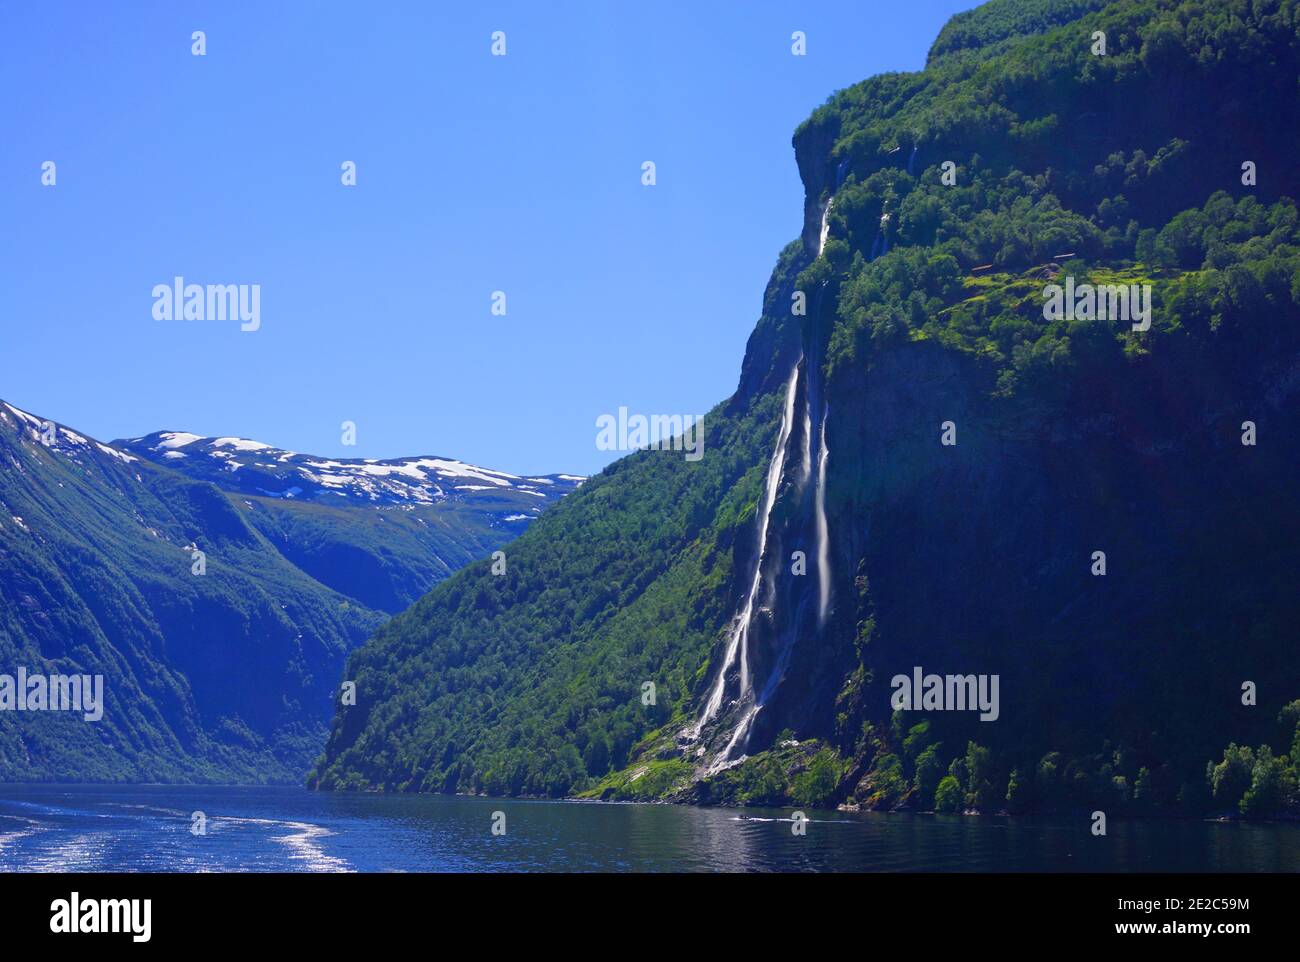 La cascade de sept Sœurs de 400 mètres de haut à Geiranger, en Norvège. Banque D'Images